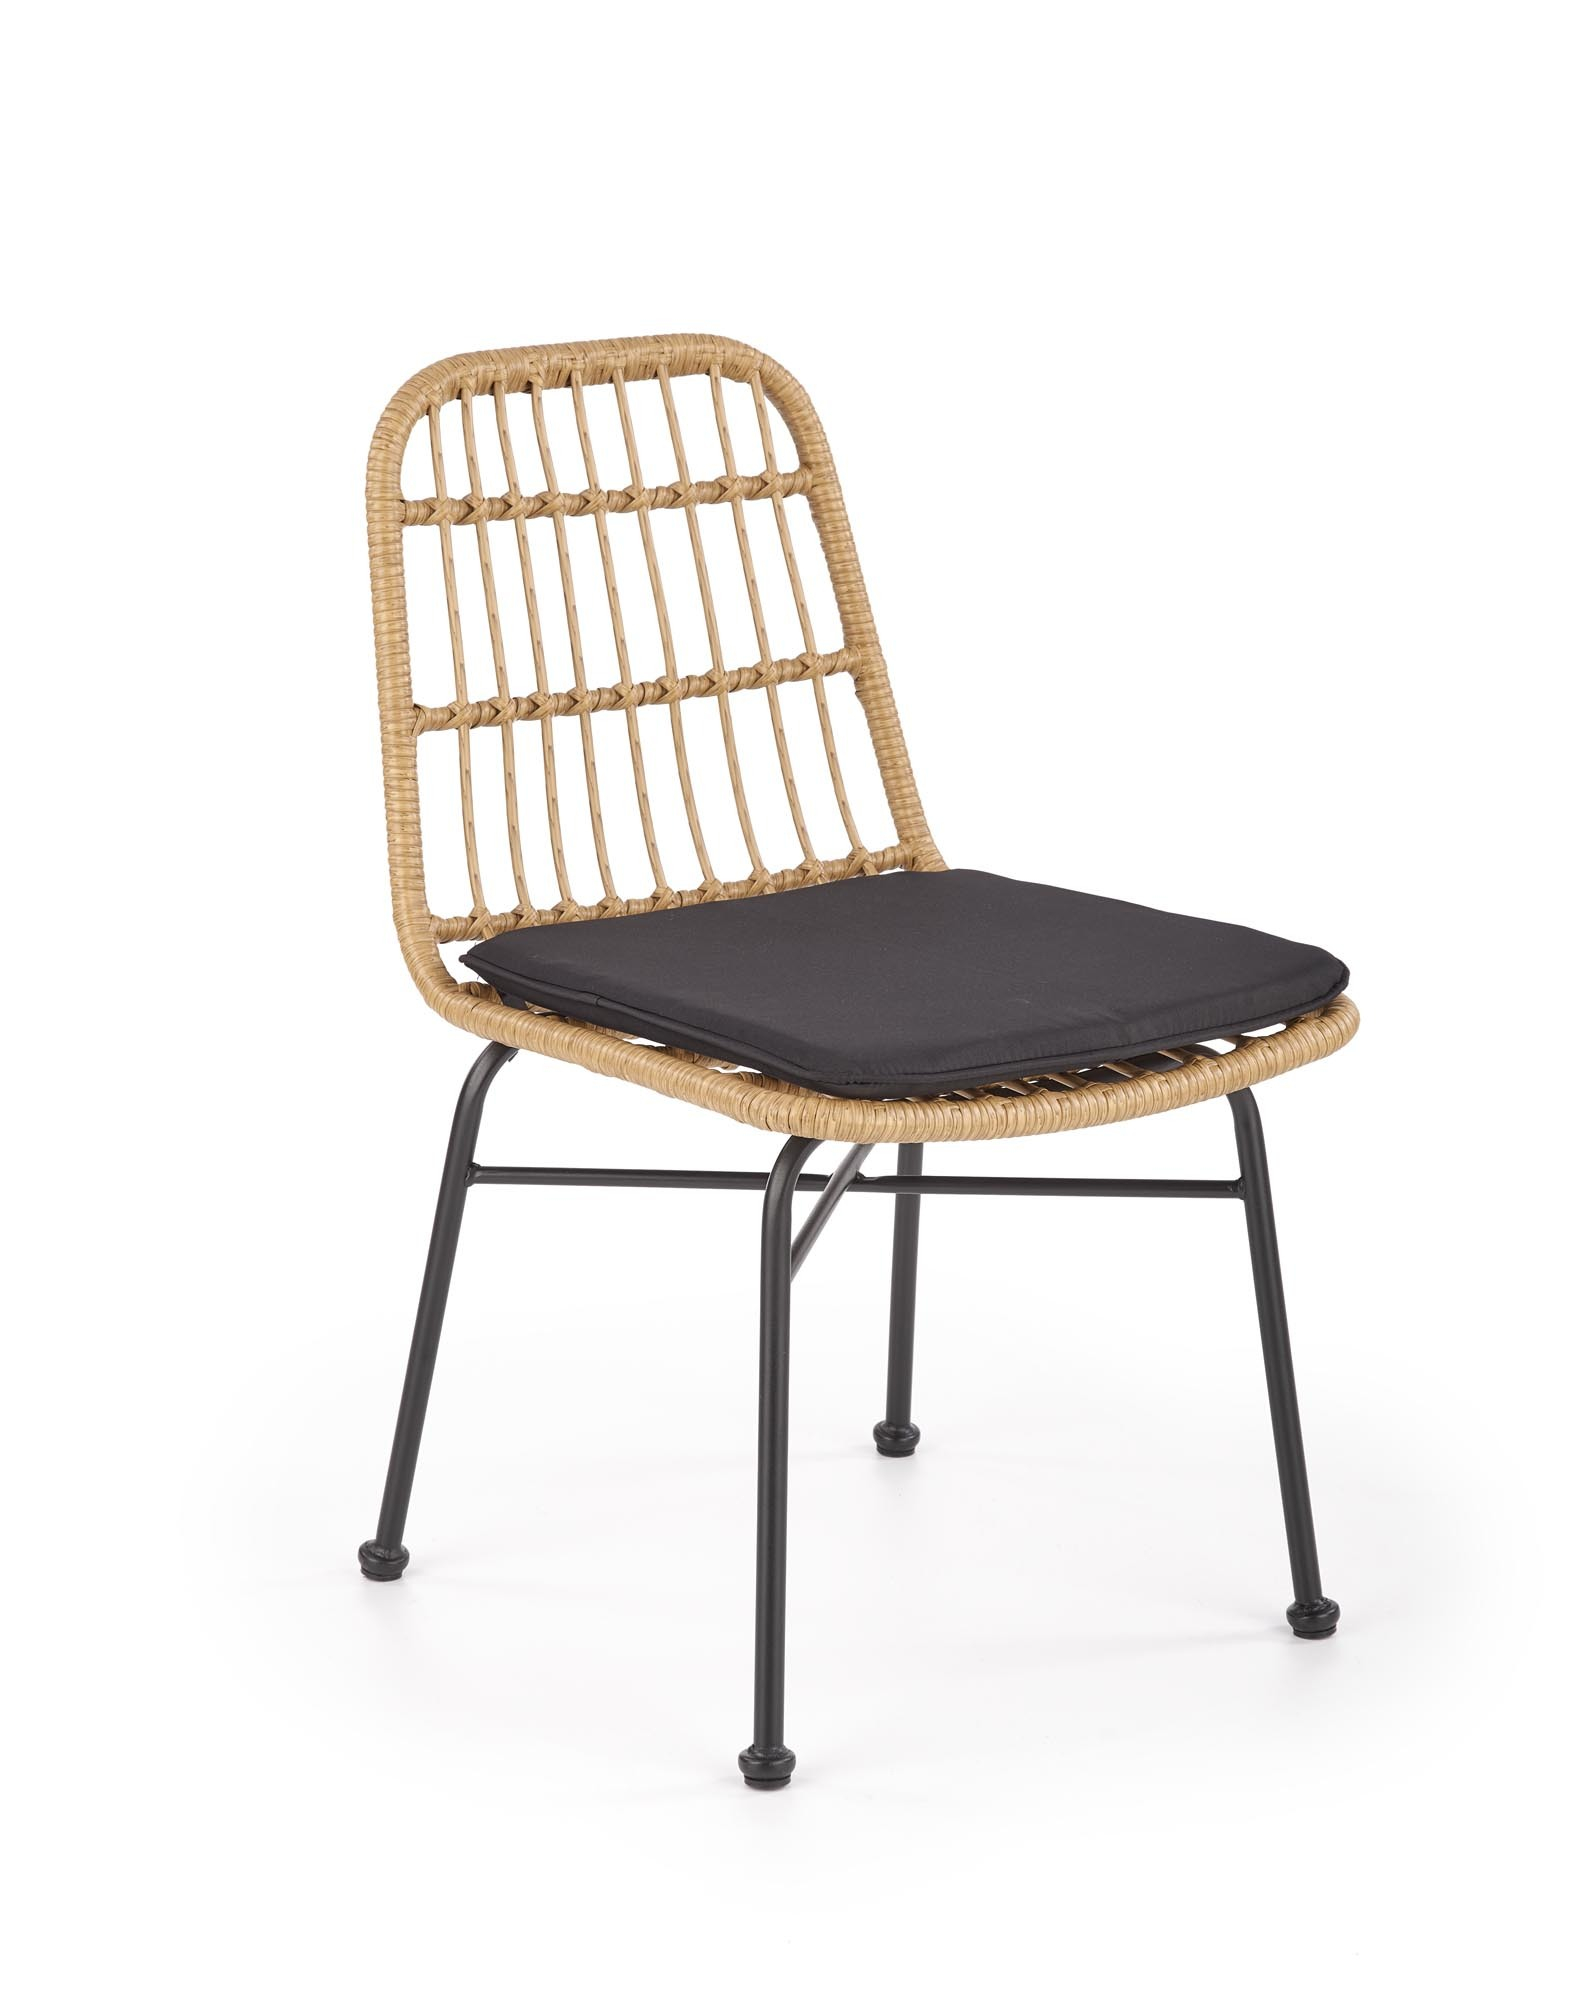 K401 krzesło czarny / naturalny (1p=4szt)